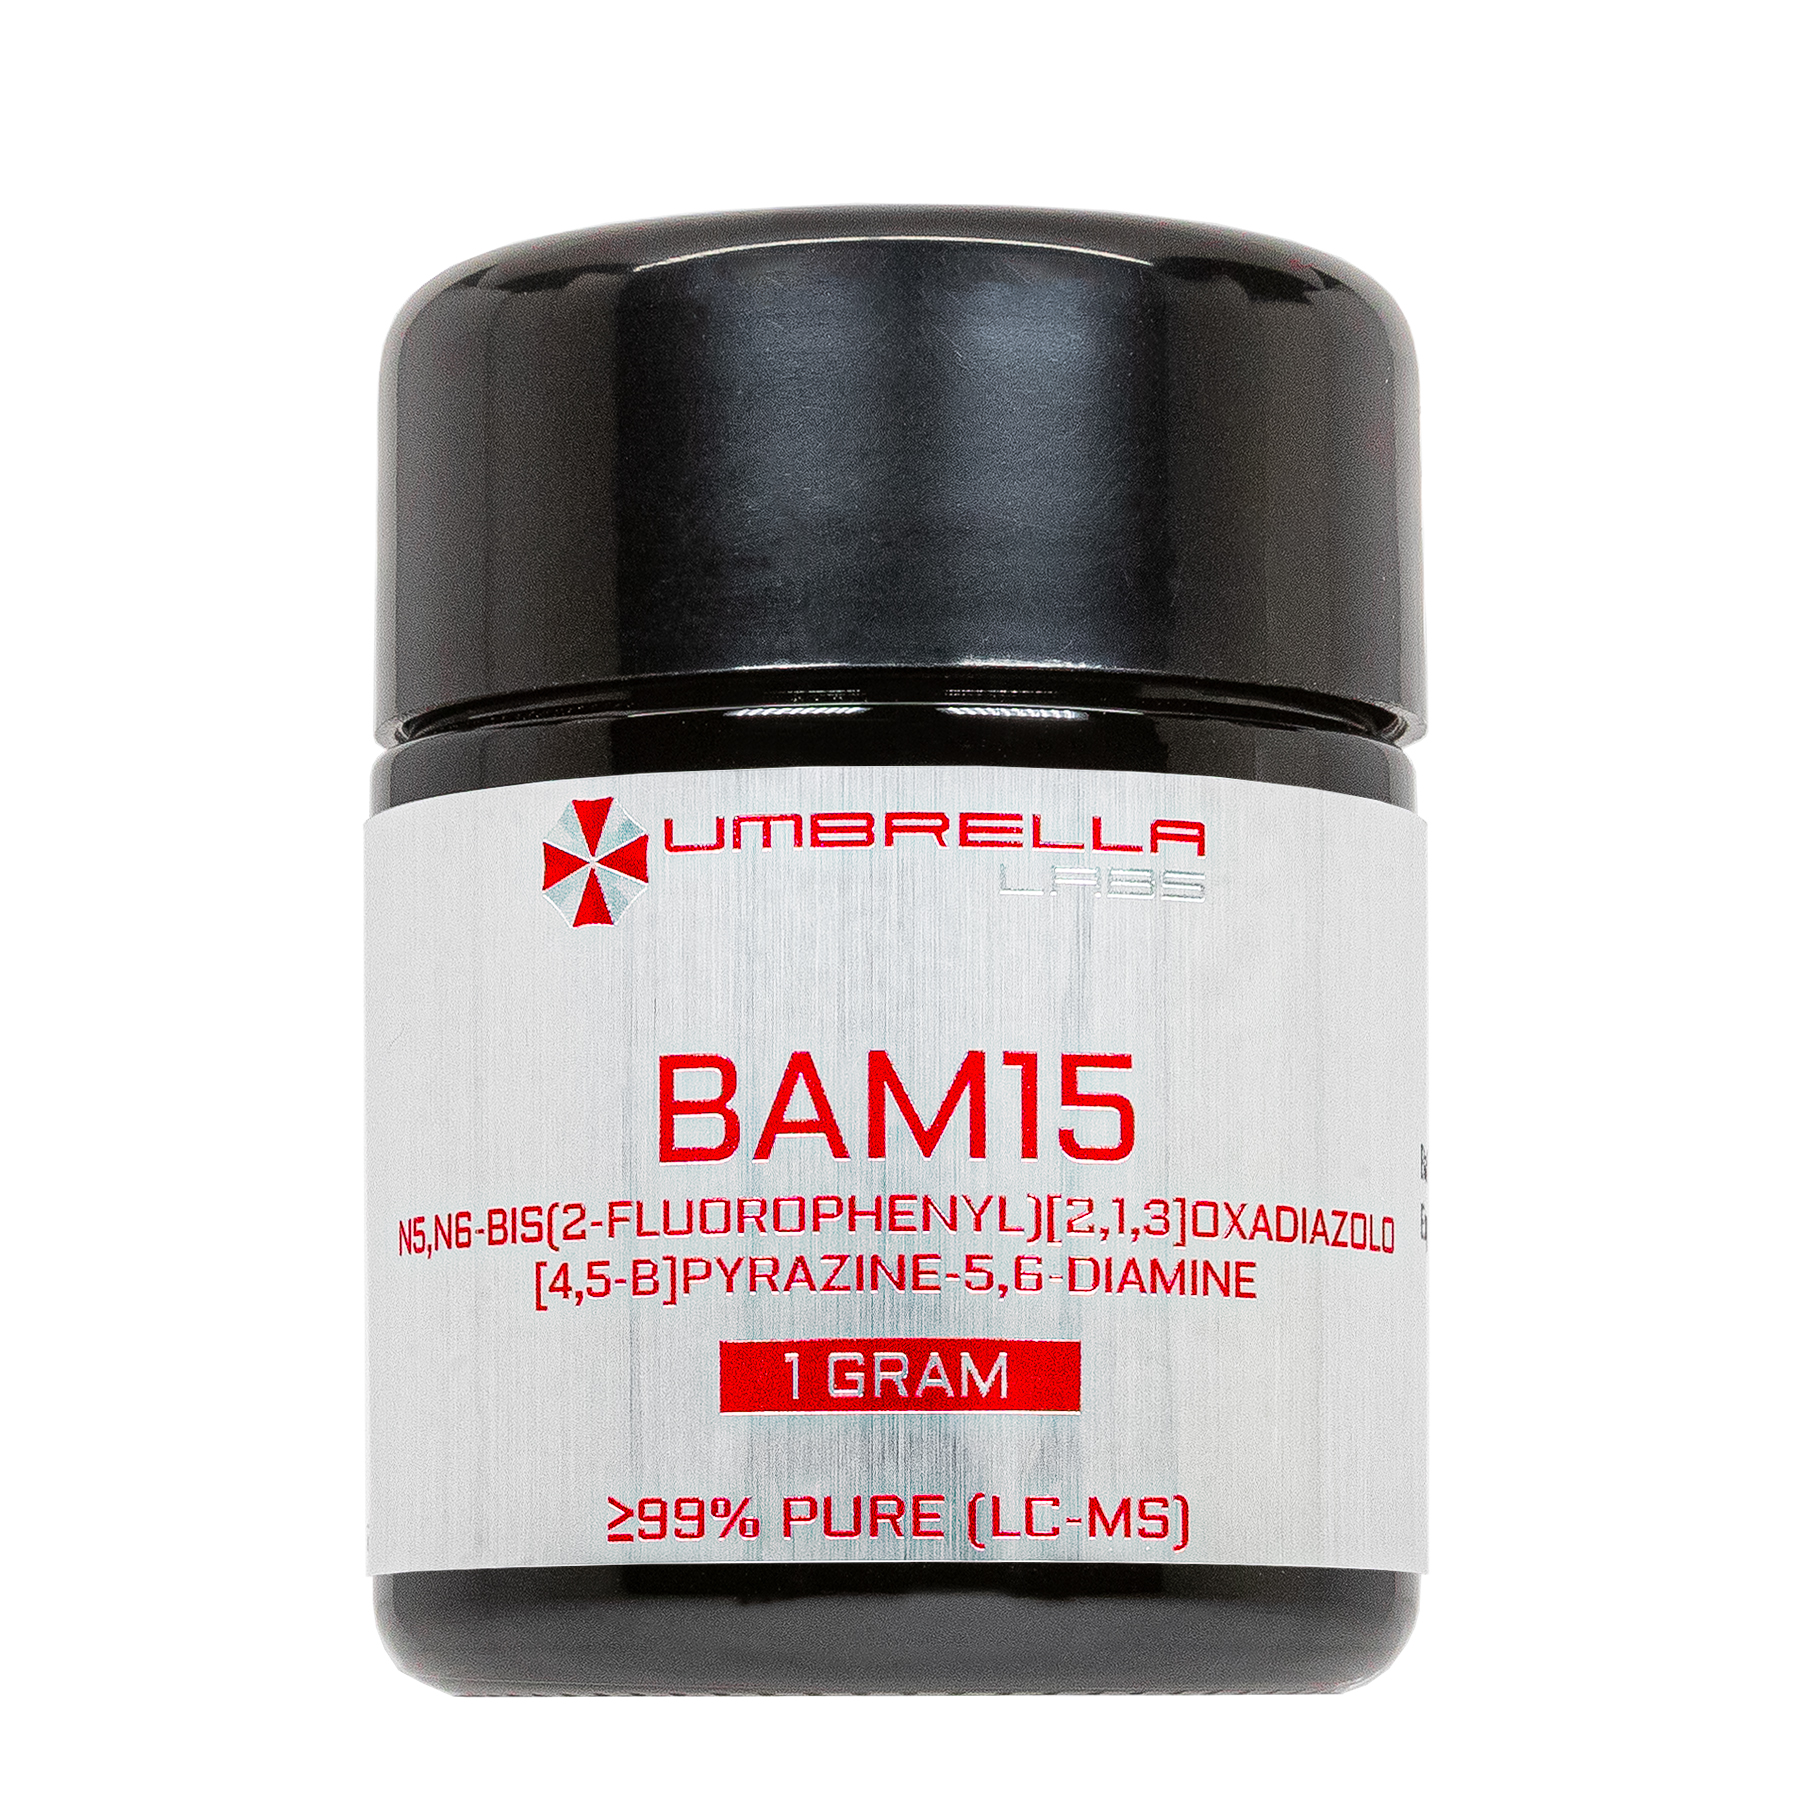 bam15 powder (1 gram)